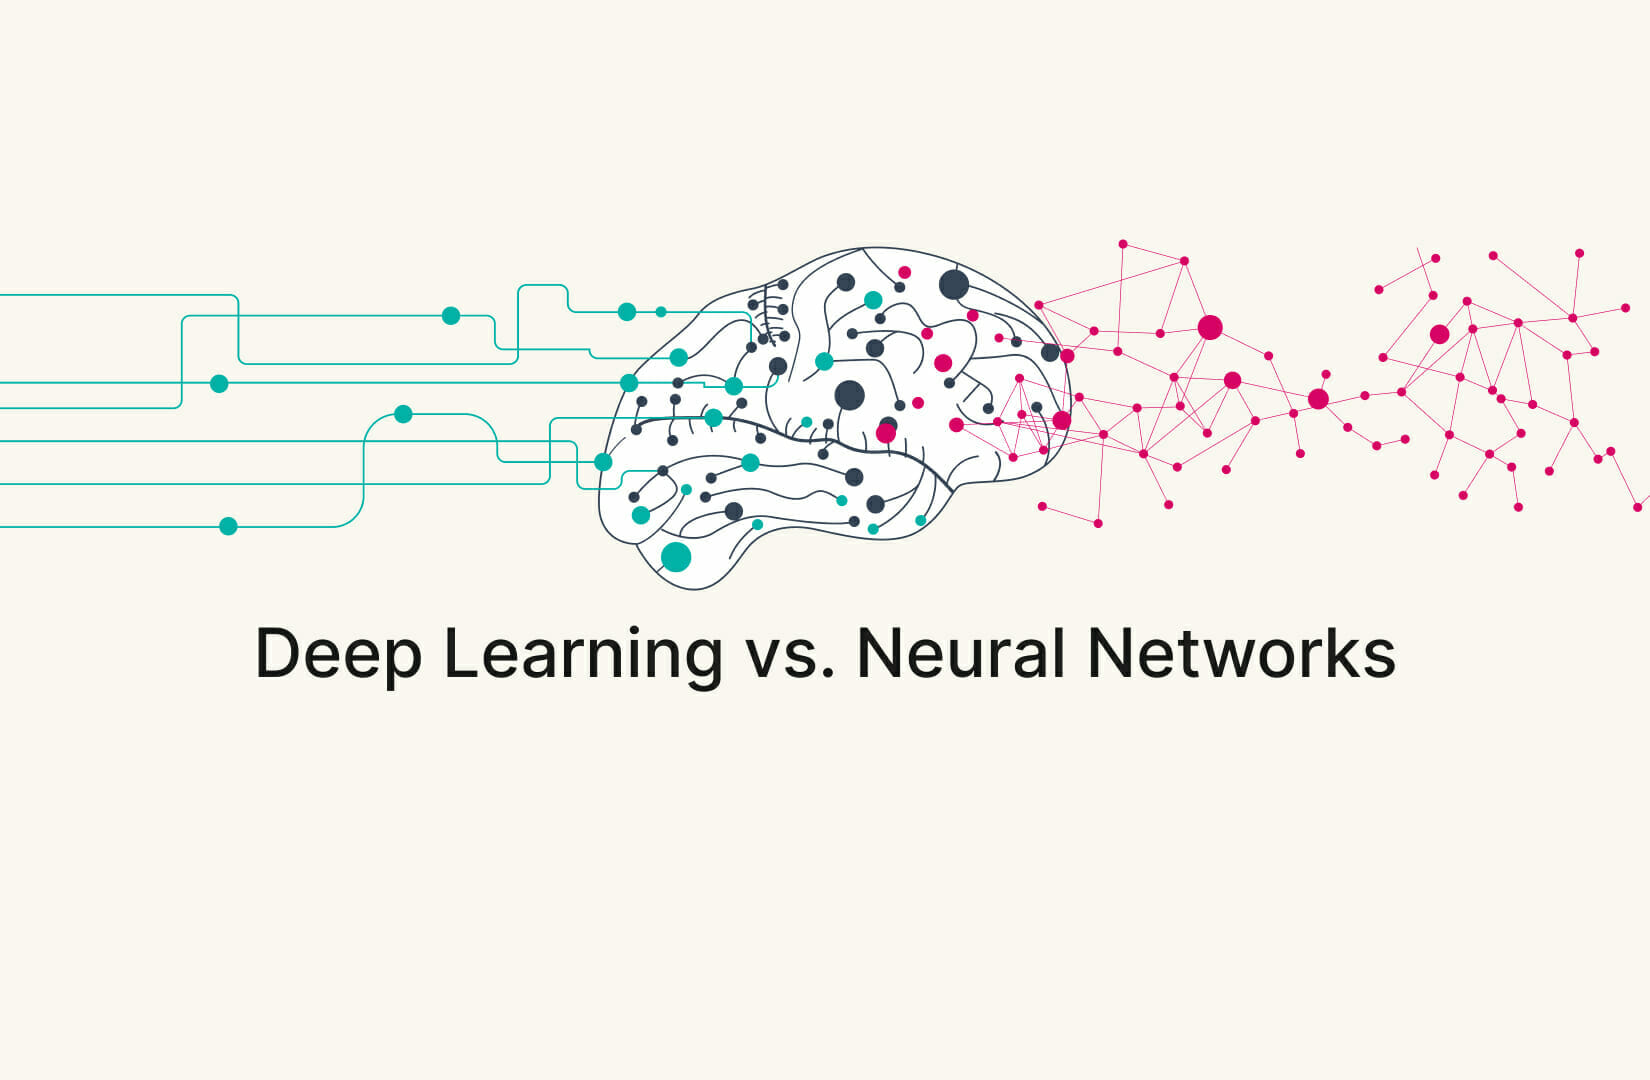 Deep learning et réseaux neuronaux